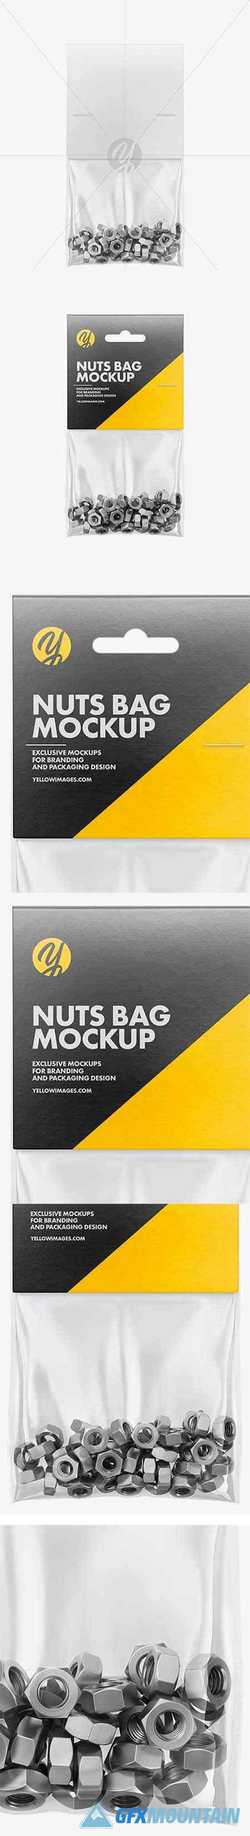 Plastic Bag With Nuts Mockup Free Download Graphics Fonts Vectors Print Templates Gfxmountain Com